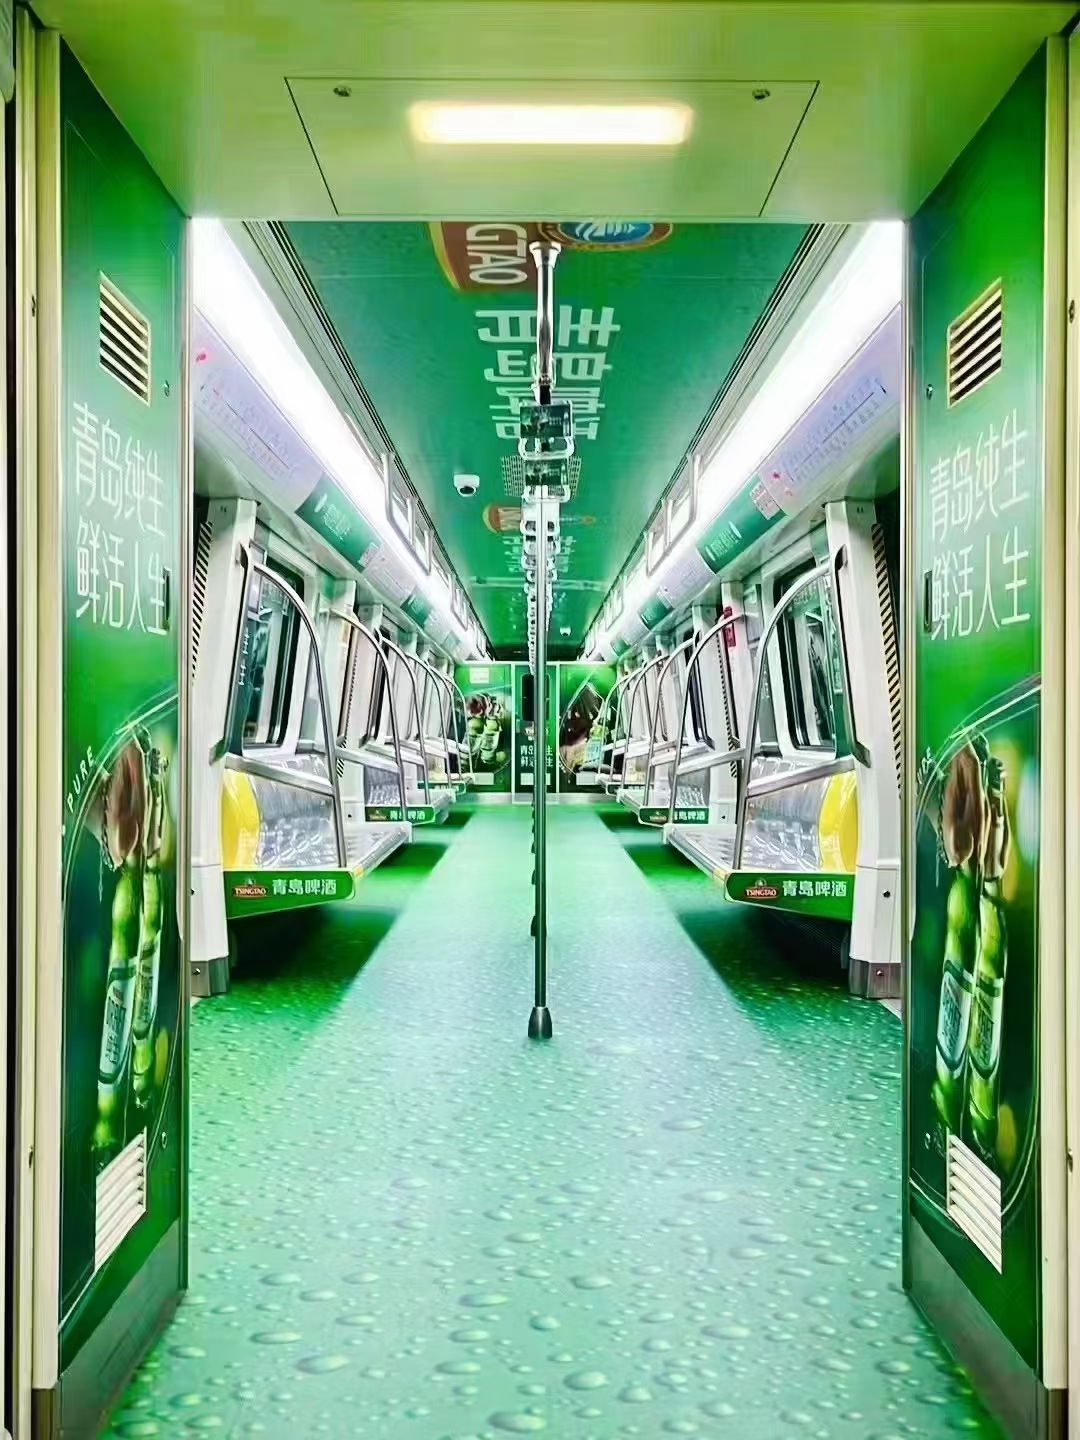 深圳地铁广告投放的想象力与个性化